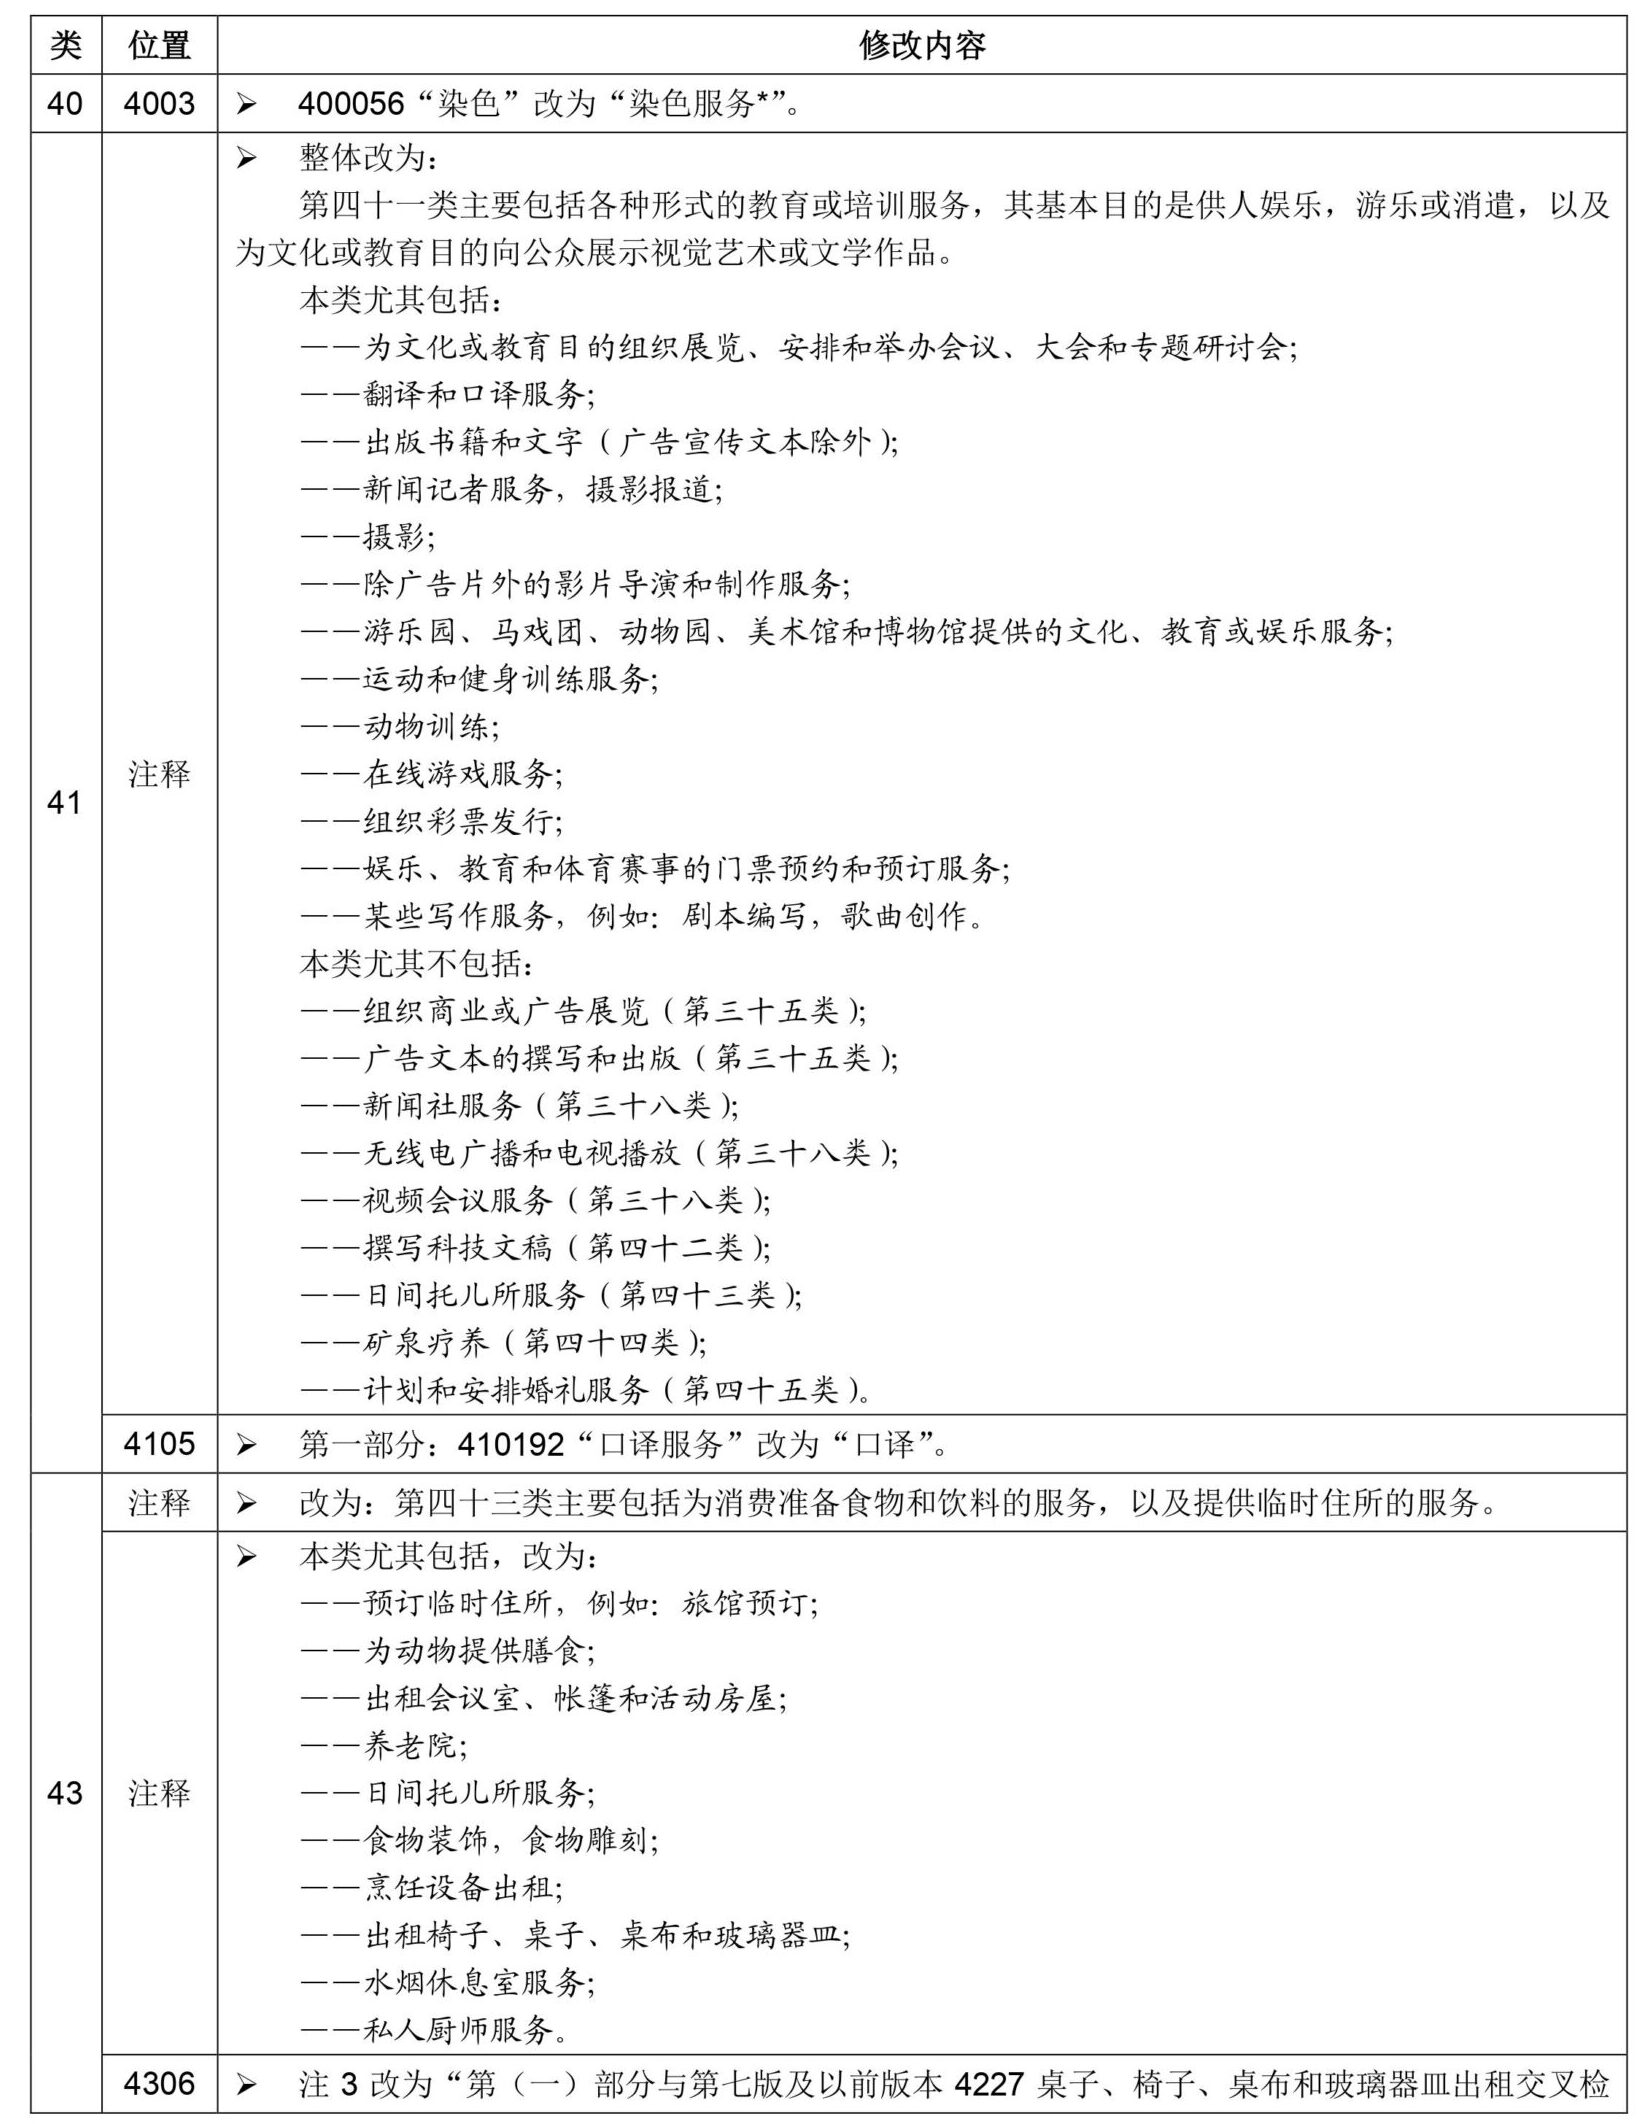 尼斯分类第十一版2021文本中文版和区分表修改内容